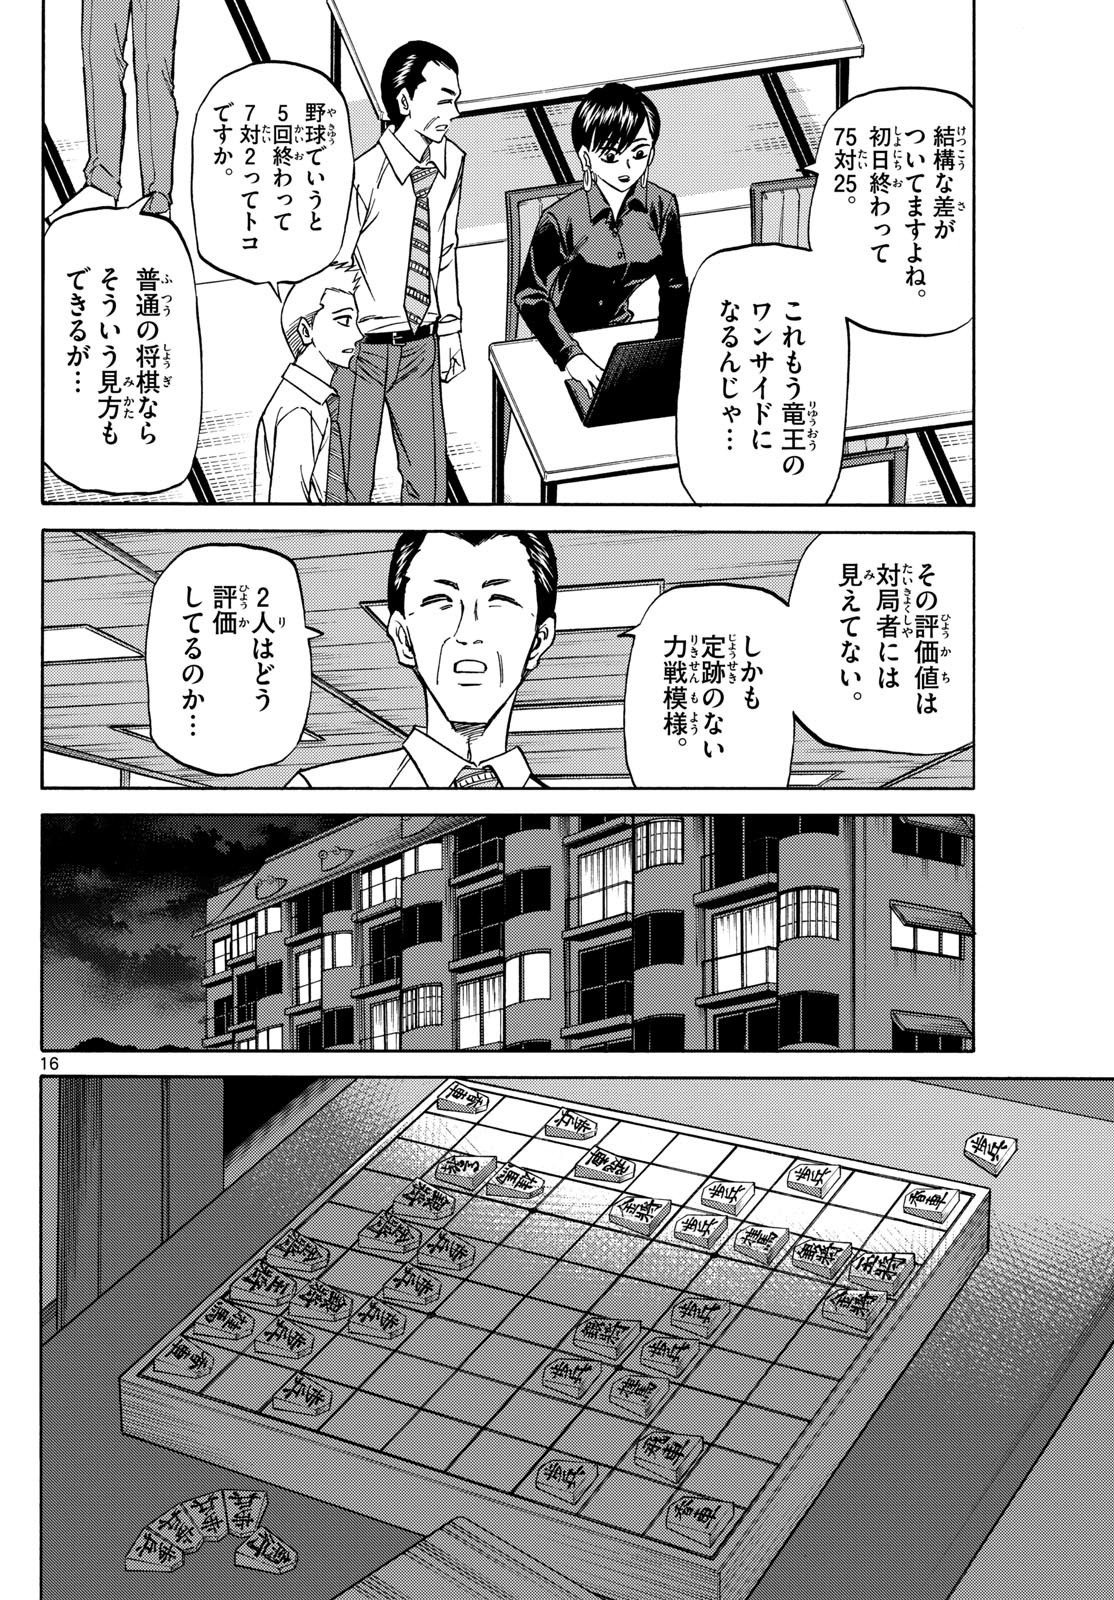 Ryu-to-Ichigo - Chapter 162 - Page 16